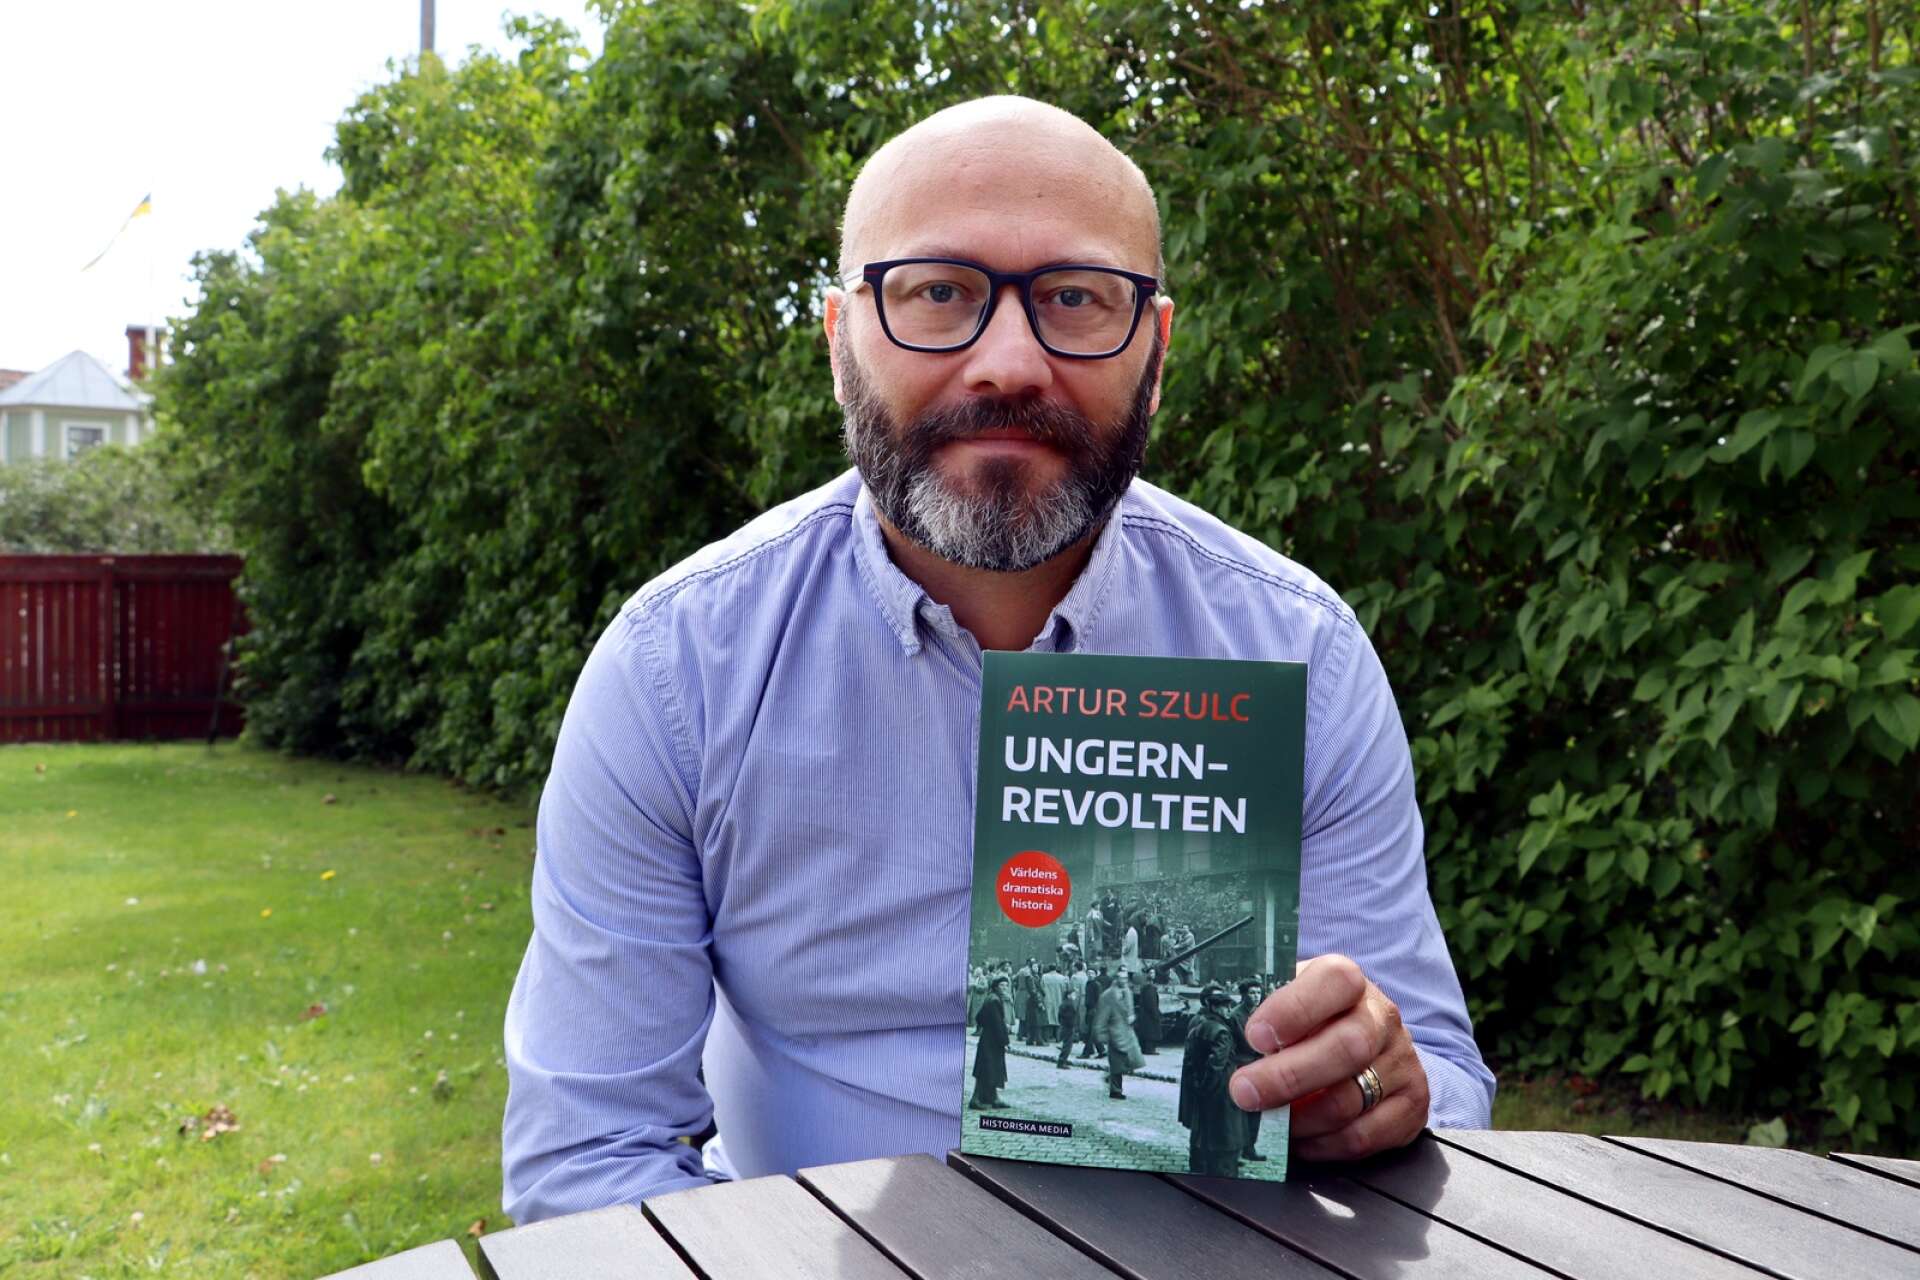 Hjoförfattare Artur Szulc har gett ut en ny historisk bok och den här gången handlar det om Ungernrevolten.